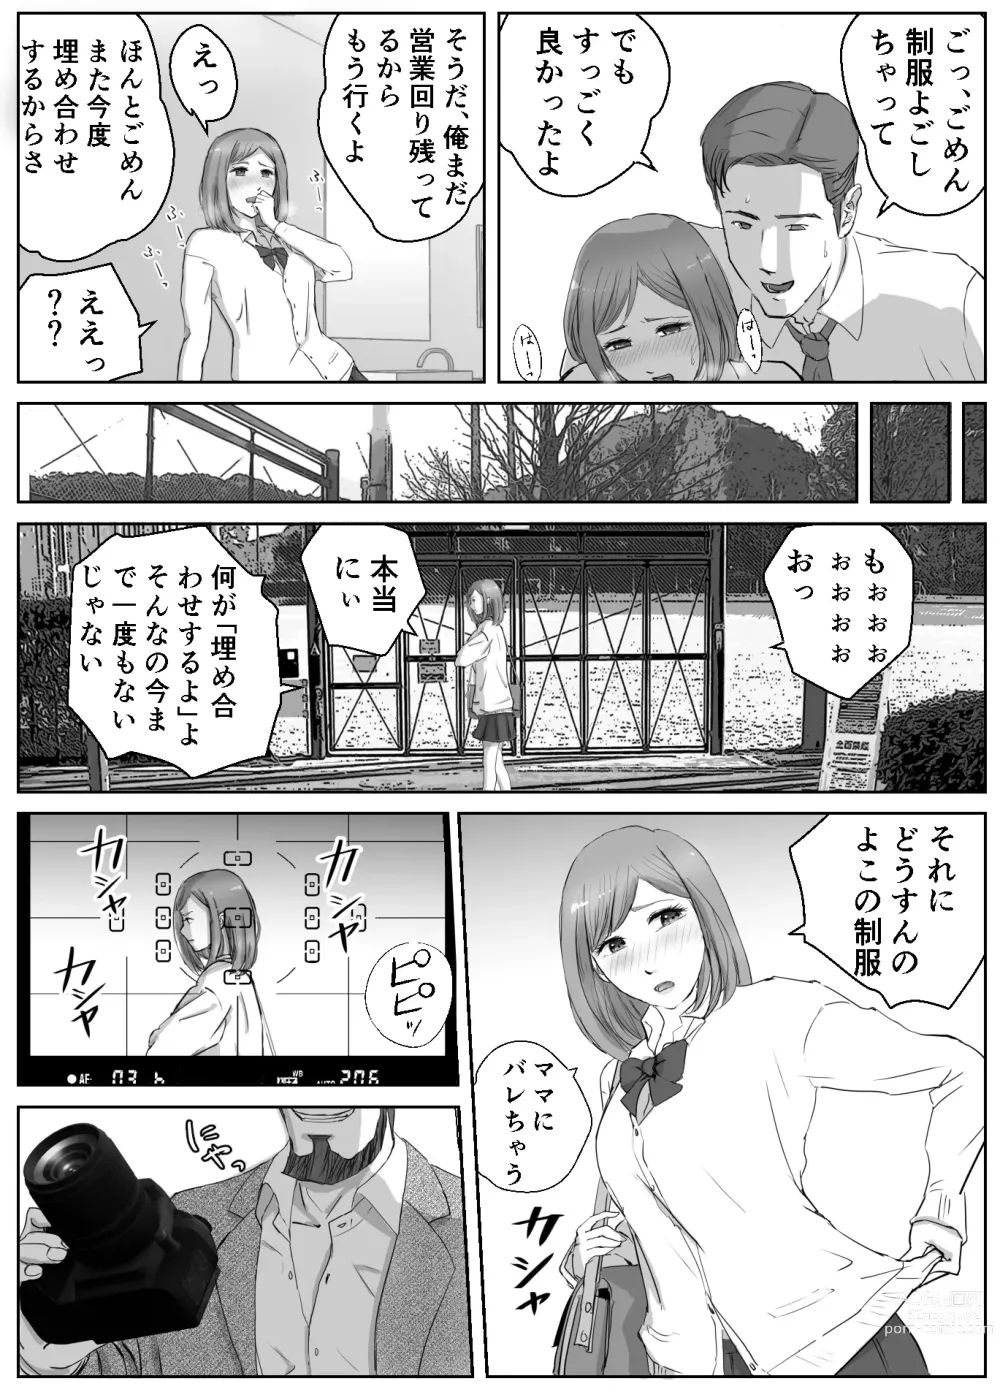 Page 9 of doujinshi Ano Hi no Uso 1